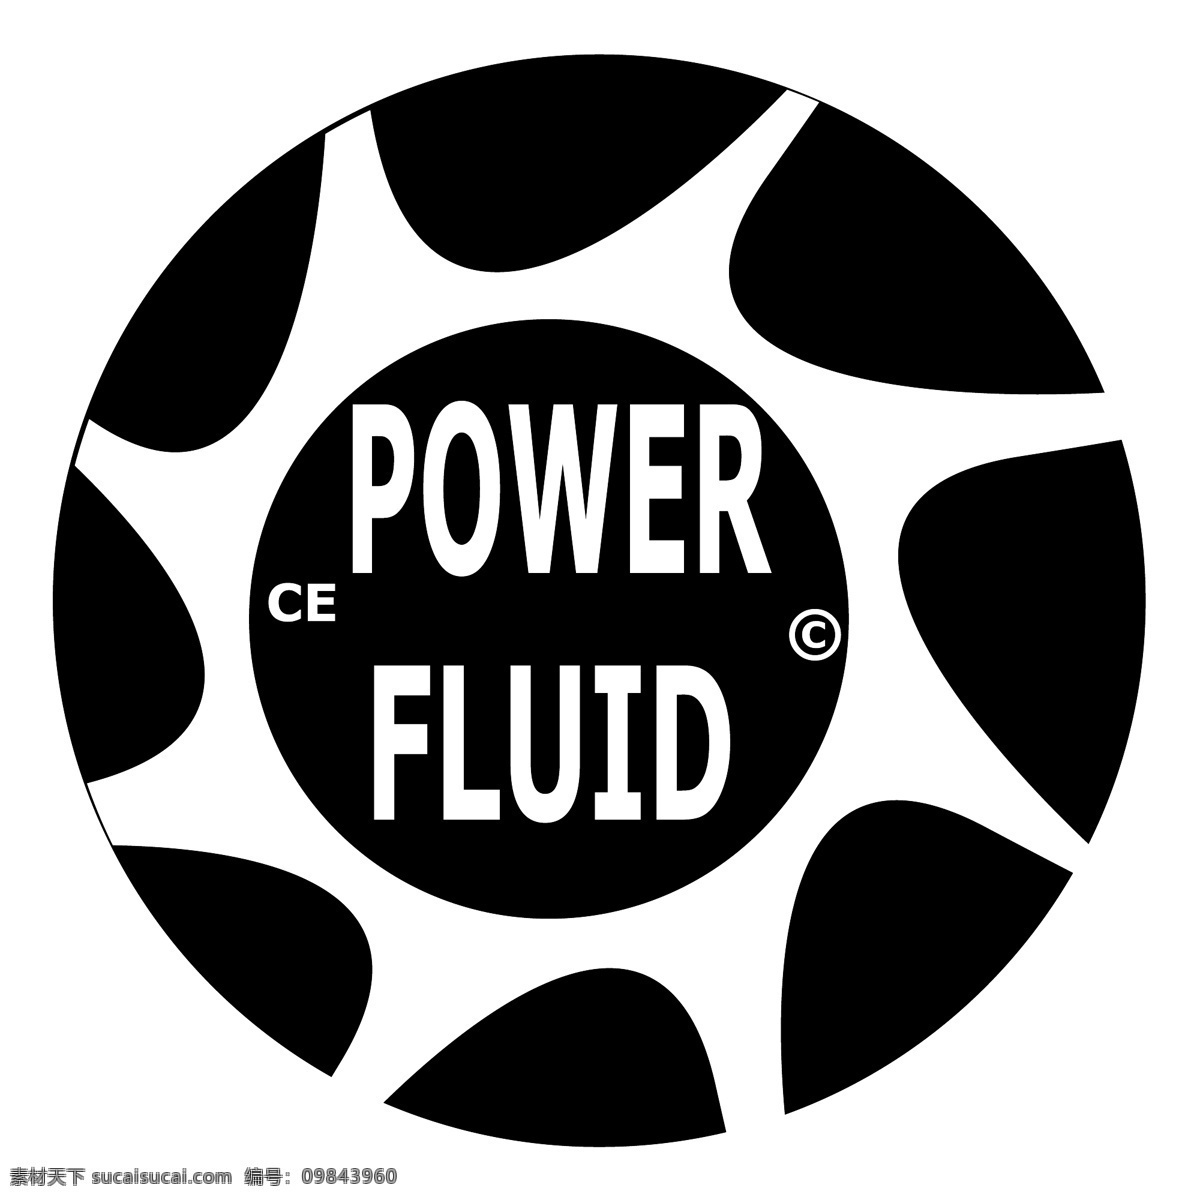 powerfluid 球迷 球迷们的自由 风扇设计 迷 向量 设计的球迷 矢量 矢量图像 免费 矢量艺术载体 球迷免费 球迷向量 向量自由风扇 蓝色